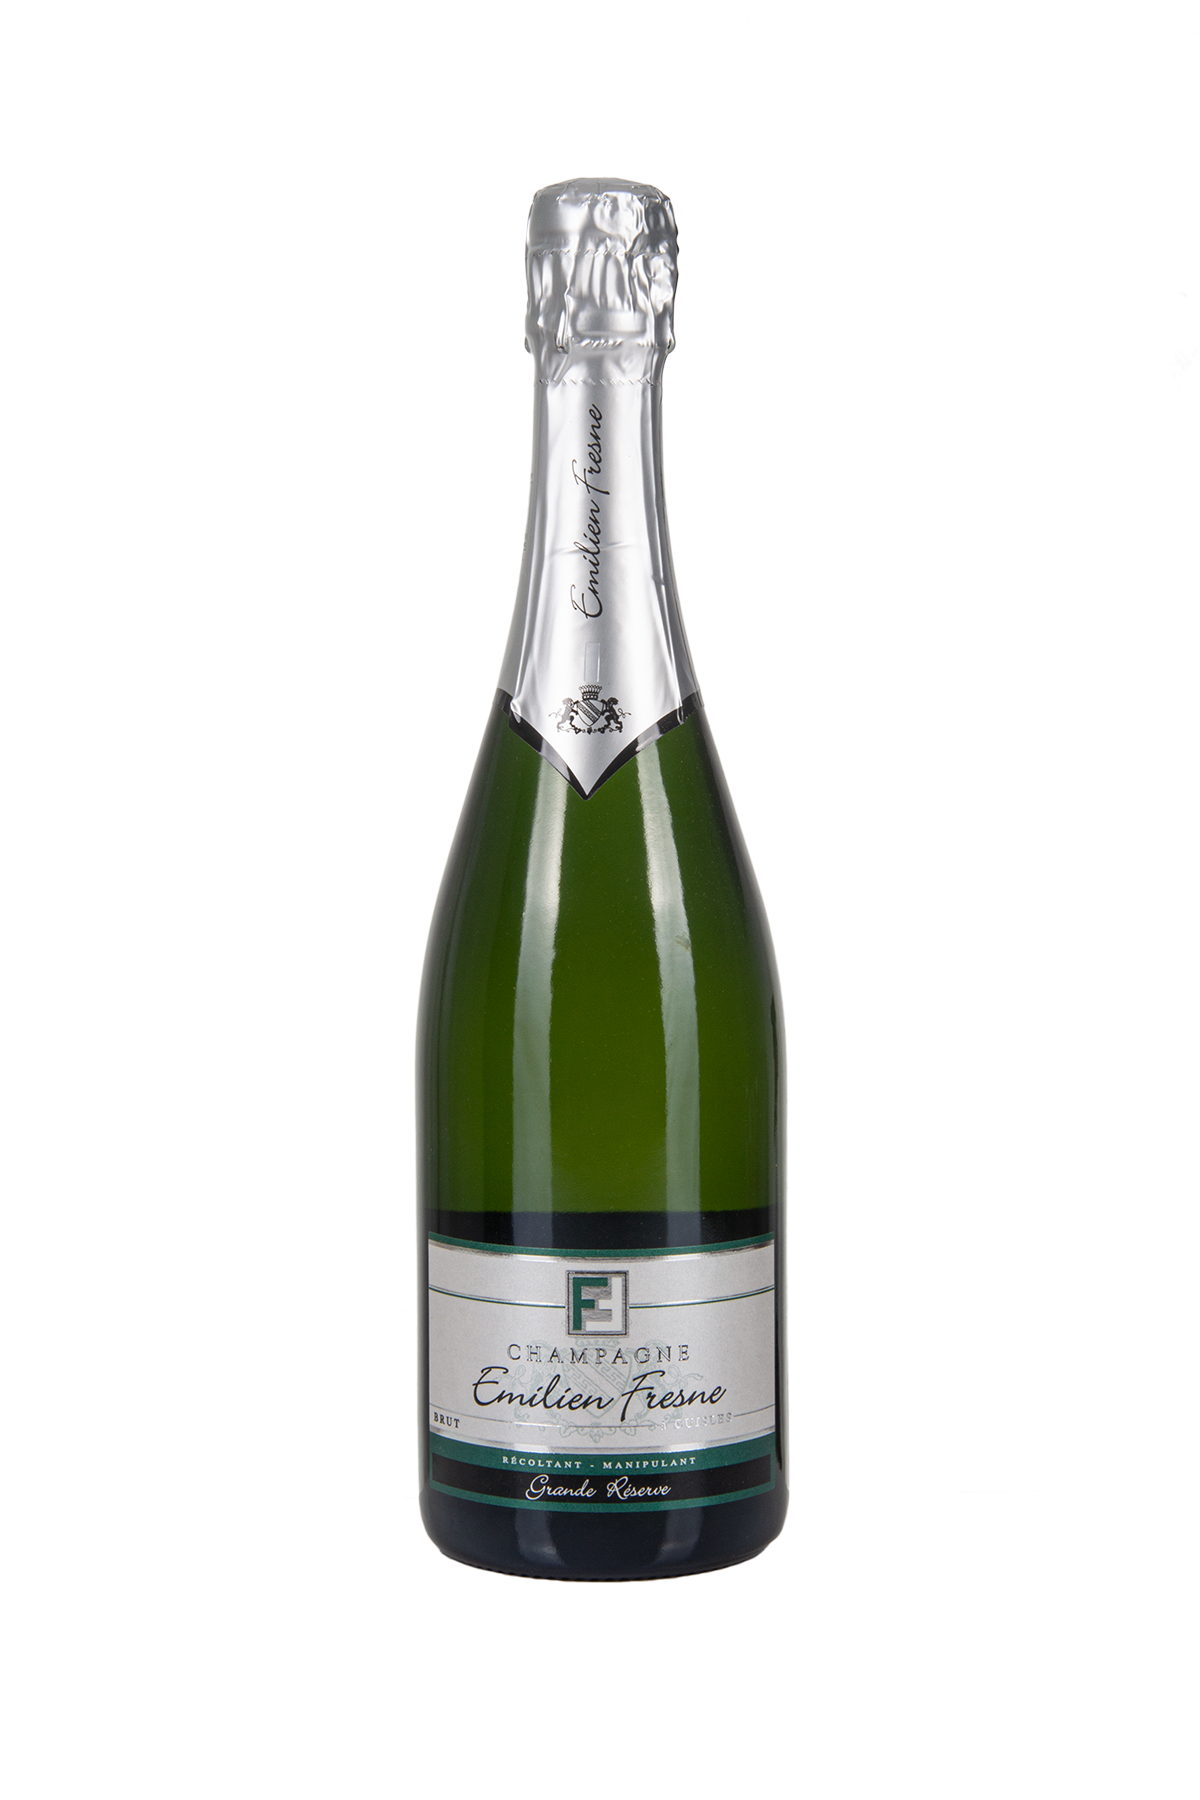 Das Bild zeigt die Flasche Champagne AOC Brut Emilien Fresne - Cuvée La Grande Réserve